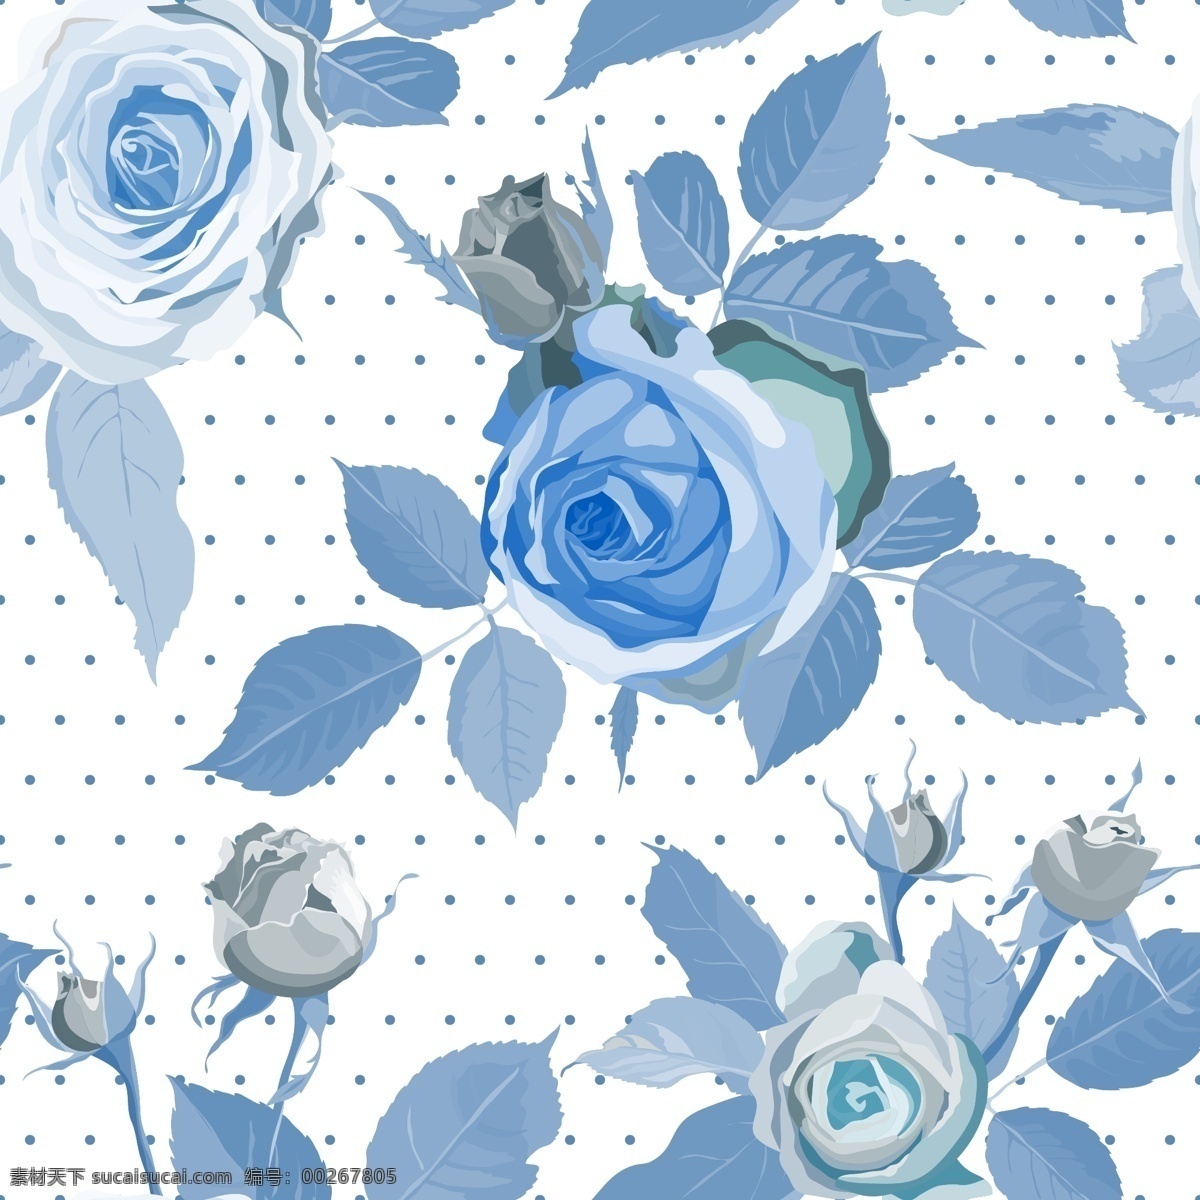 蓝 玫瑰 无缝 背景 水玉点 玫瑰花 蓝玫瑰 无缝背景 矢量图 eps格式 白色